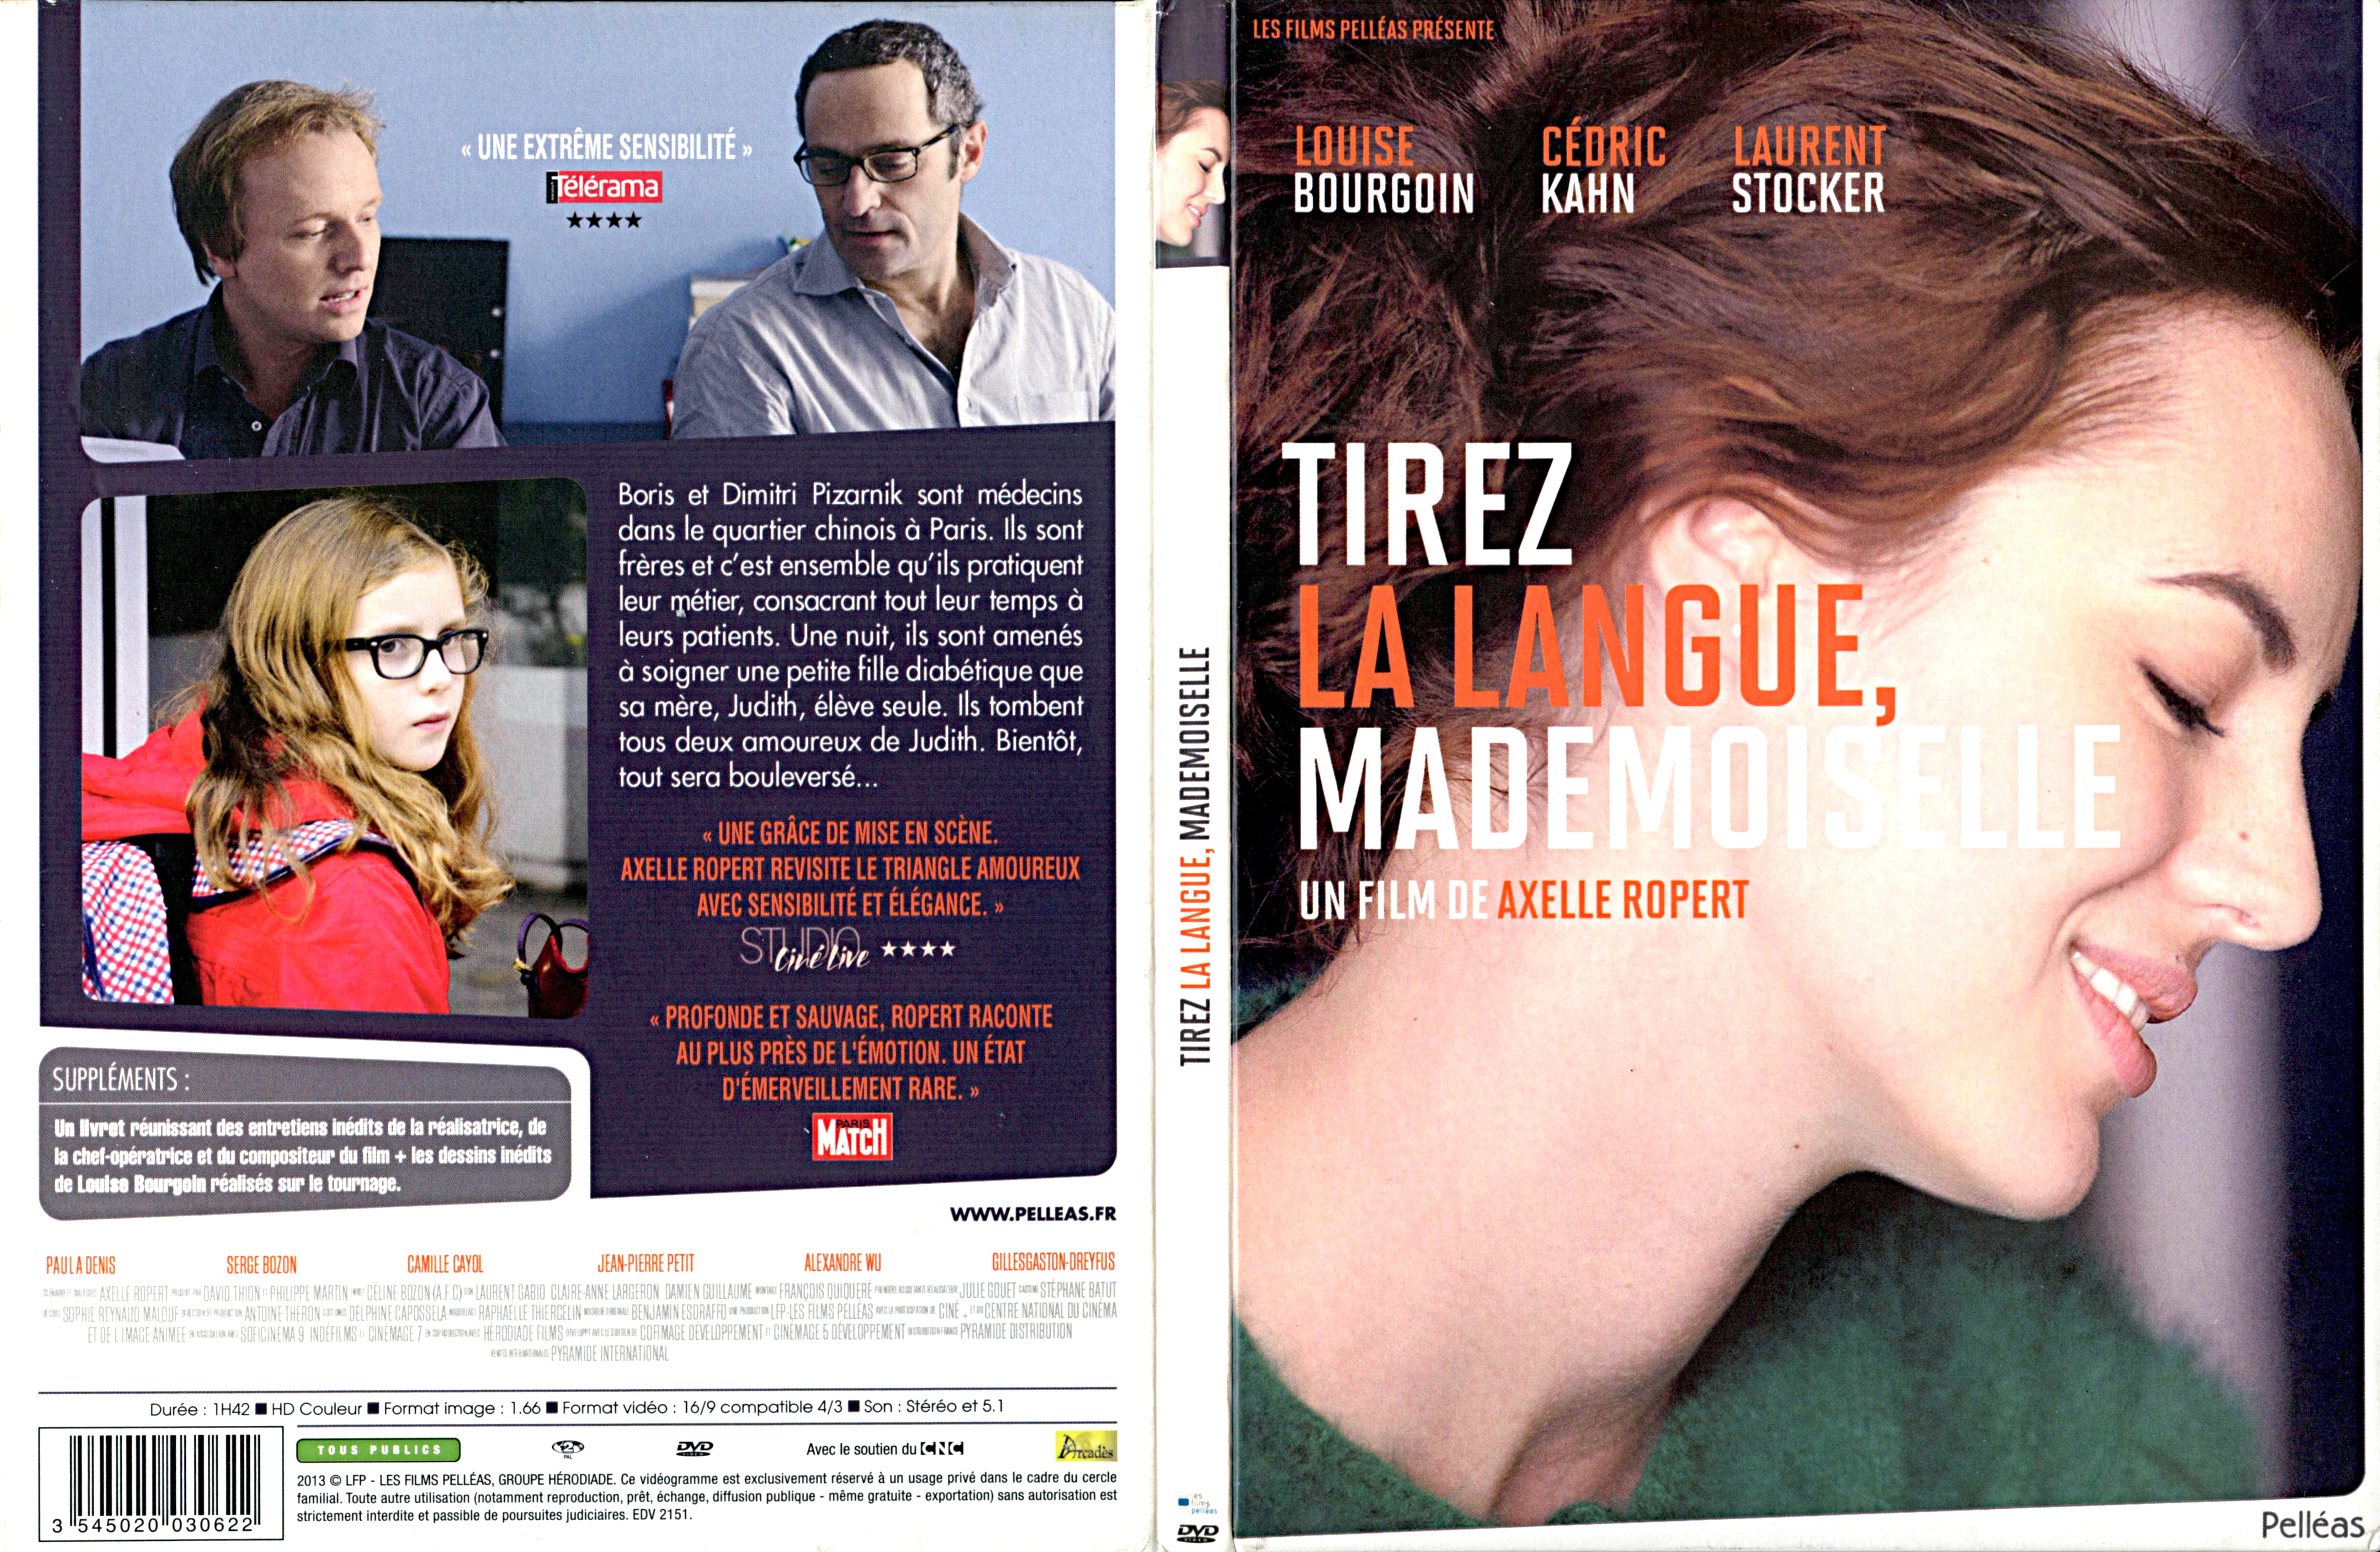 Jaquette DVD Tirez la langue, mademoiselle